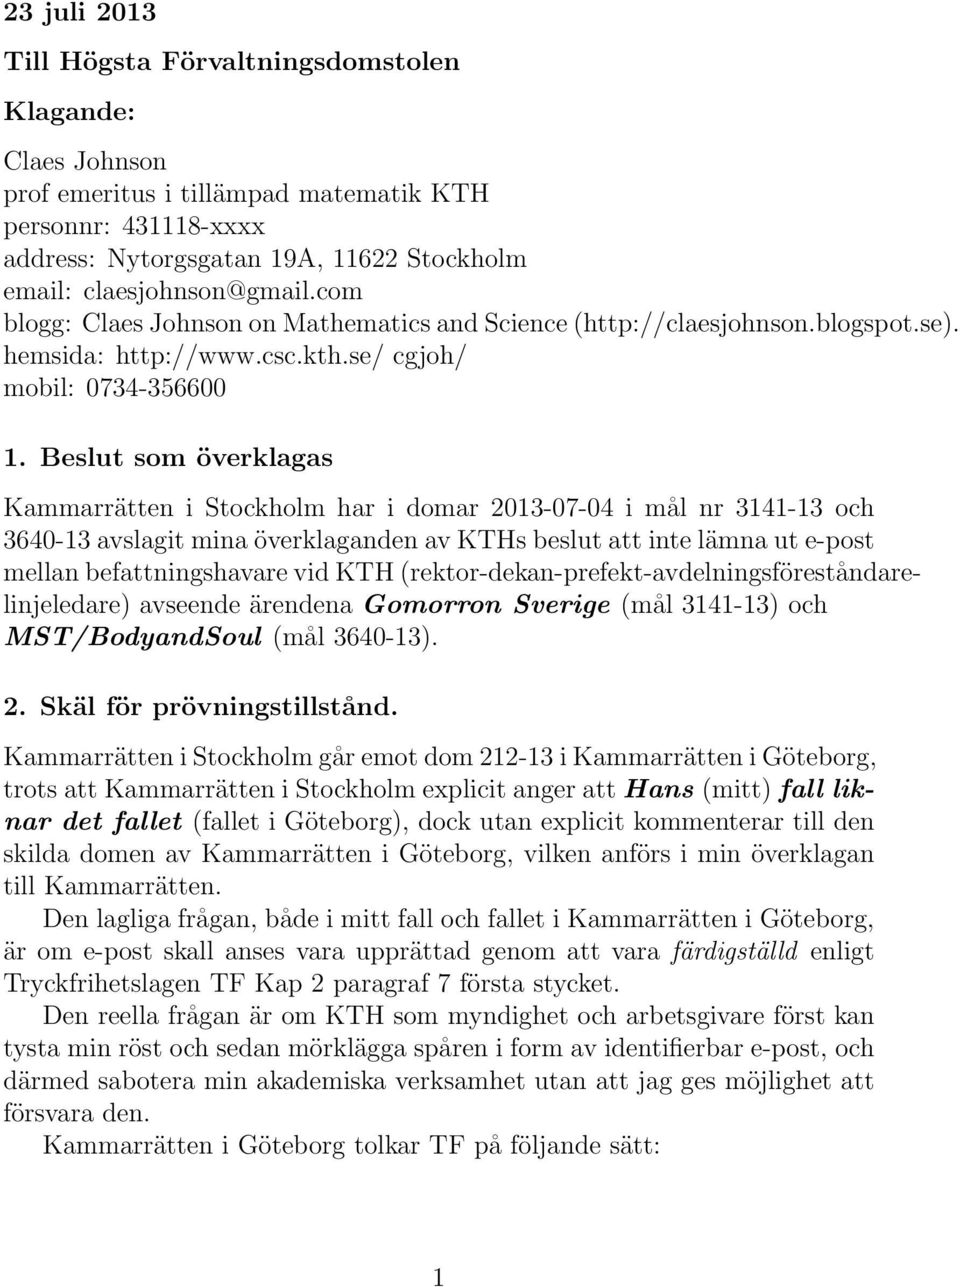 Beslut som överklagas Kammarrätten i Stockholm har i domar 2013-07-04 i mål nr 3141-13 och 3640-13 avslagit mina överklaganden av KTHs beslut att inte lämna ut e-post mellan befattningshavare vid KTH